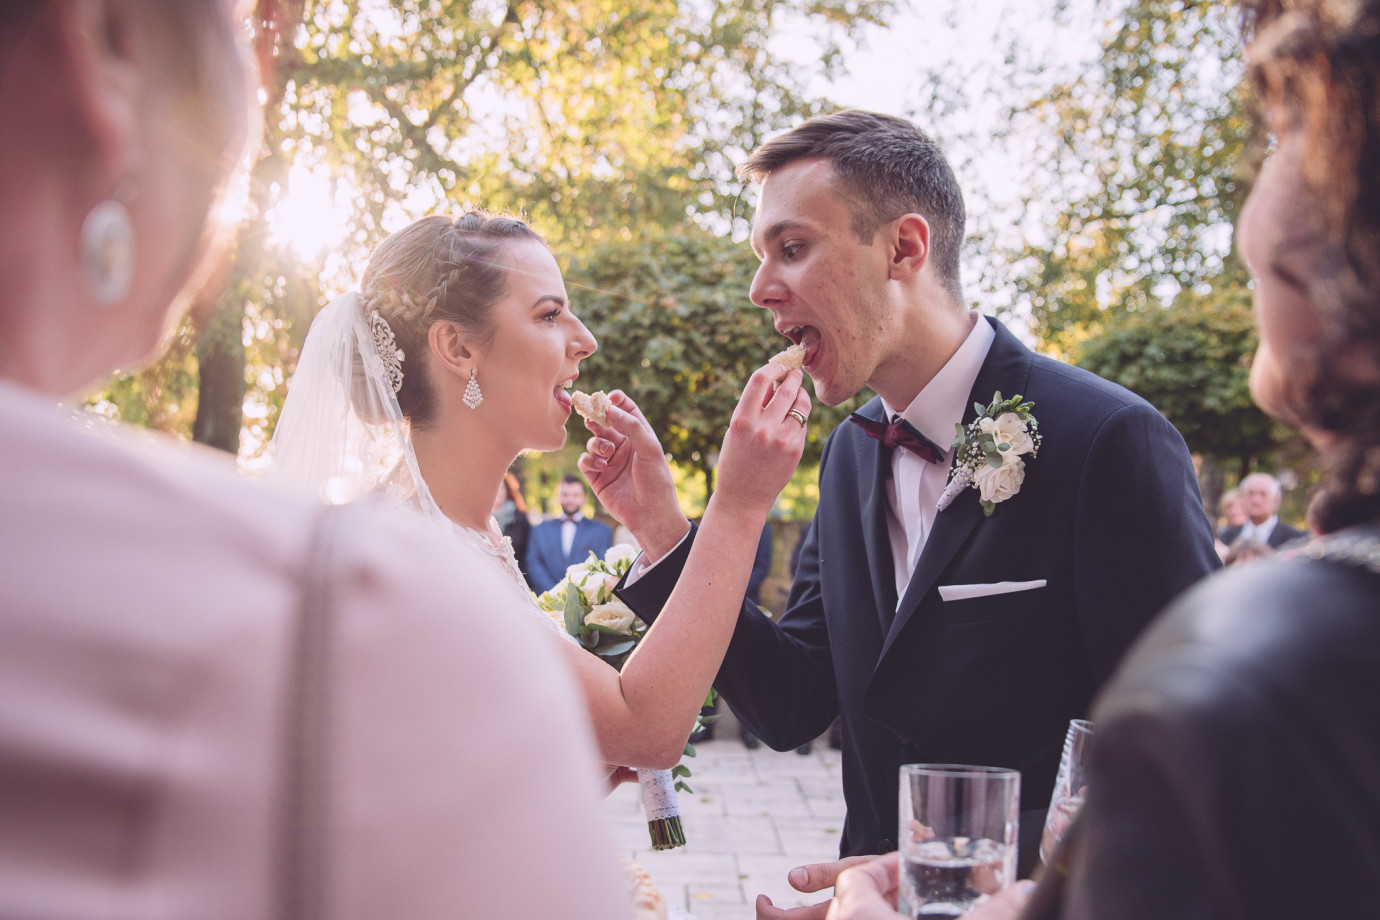 fotograf krakow fotograf-aleksander-lachowicz portfolio zdjecia slubne inspiracje wesele plener slubny sesja slubna